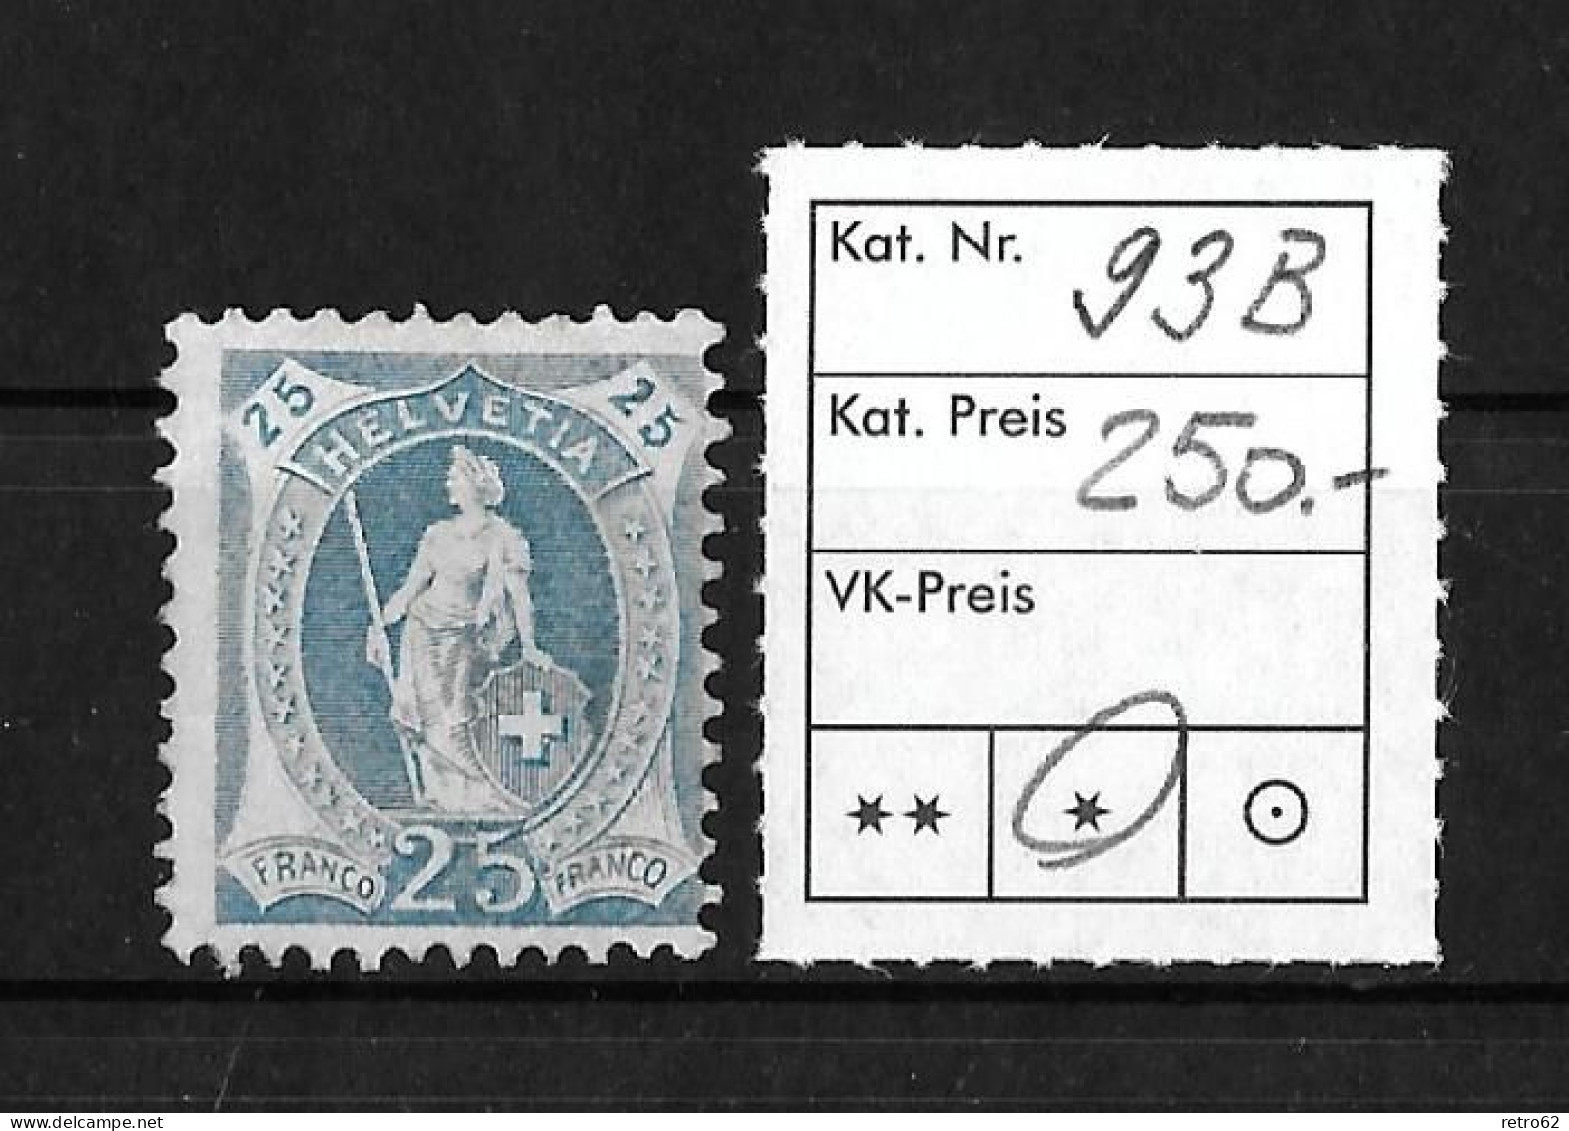 1905 - 1908 STEHENDE HELVETIA  Weisses Papier Mit Wasserzeichen (14 Zähne Senkrecht)    ►SBK-93B* / CHF 250.-◄ - Unused Stamps